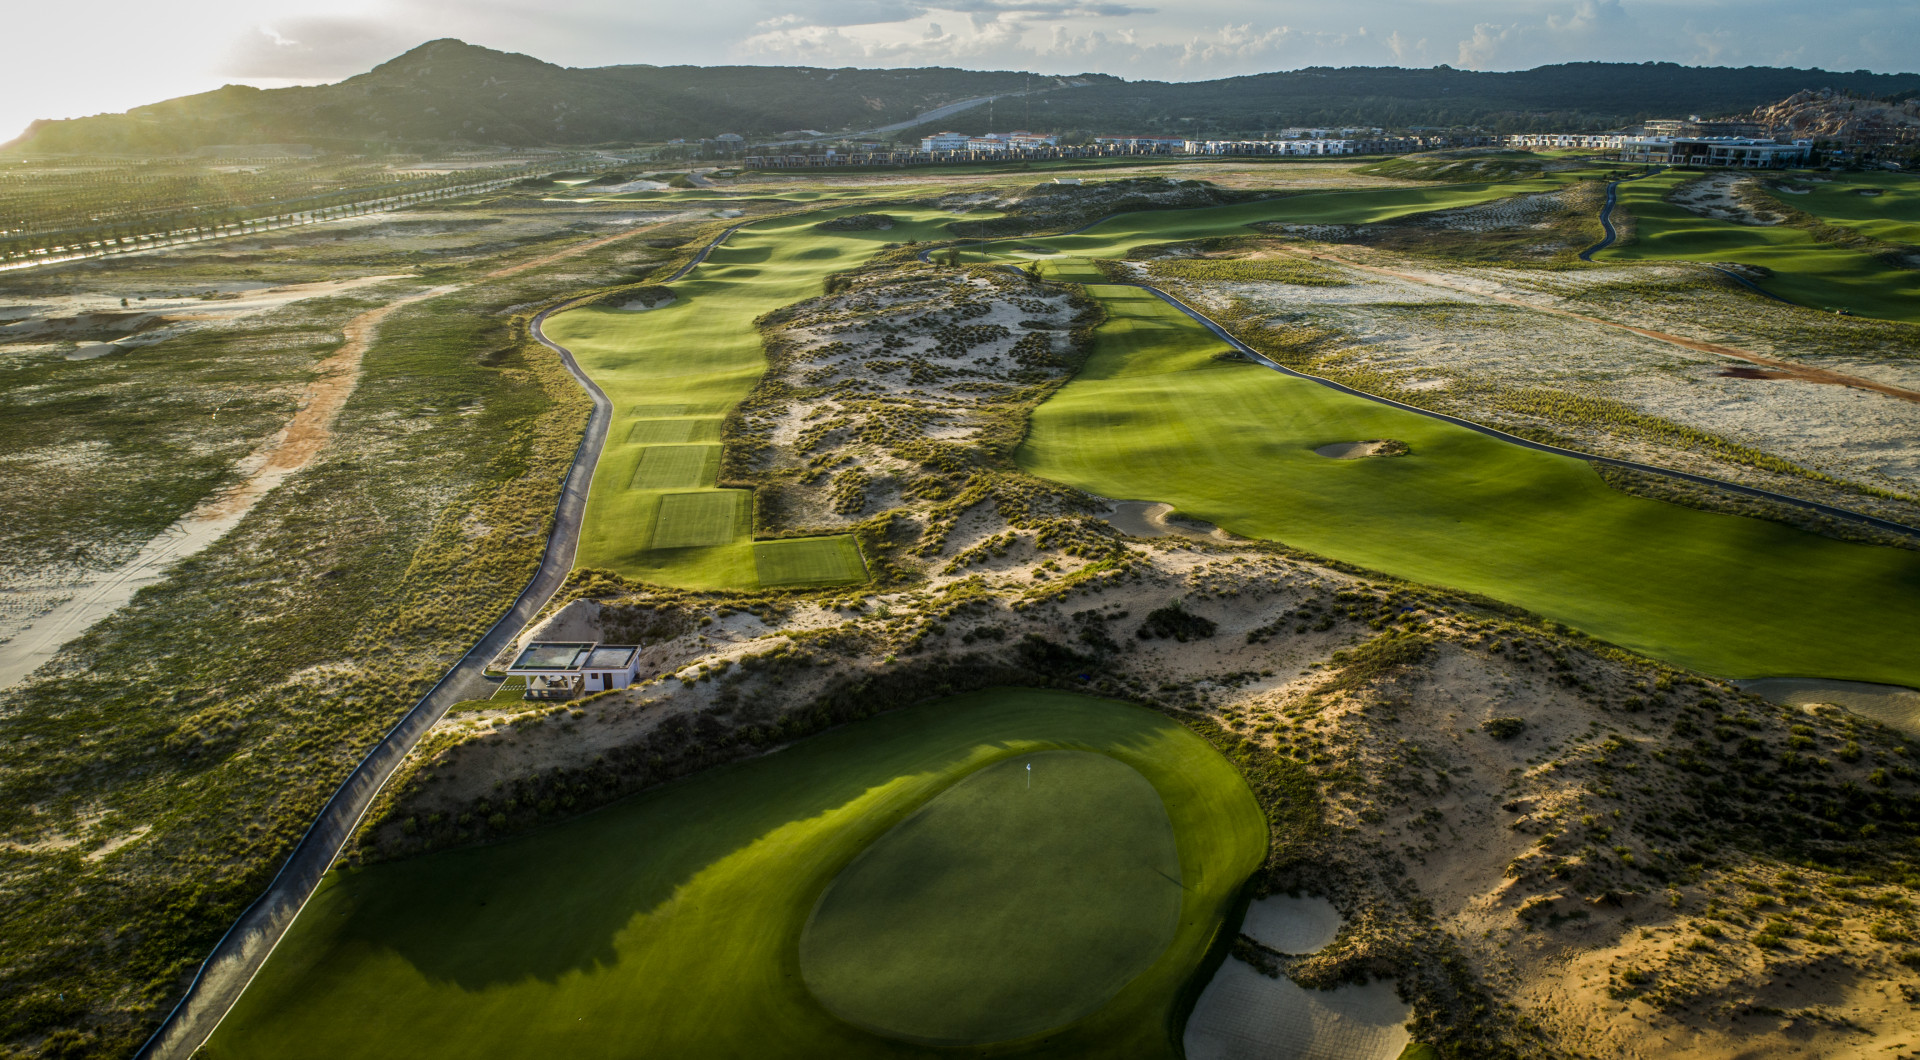 KN Golf Links được thiết kế 27 lỗ, với 18 lỗ theo phong cách sân links (liền kề bờ biển)